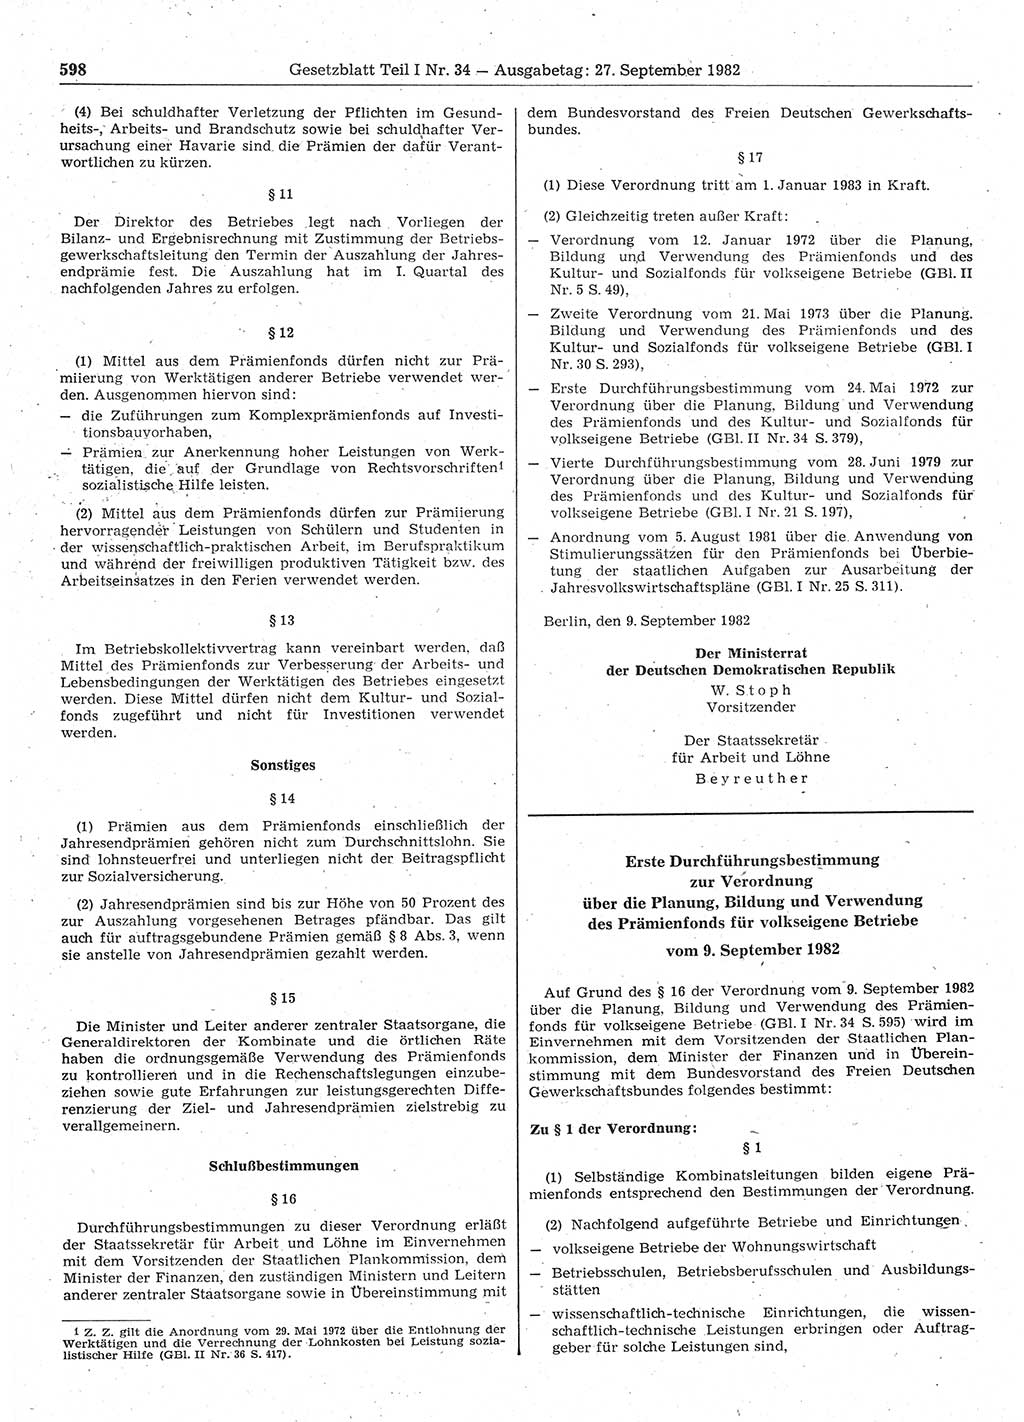 Gesetzblatt (GBl.) der Deutschen Demokratischen Republik (DDR) Teil Ⅰ 1982, Seite 598 (GBl. DDR Ⅰ 1982, S. 598)